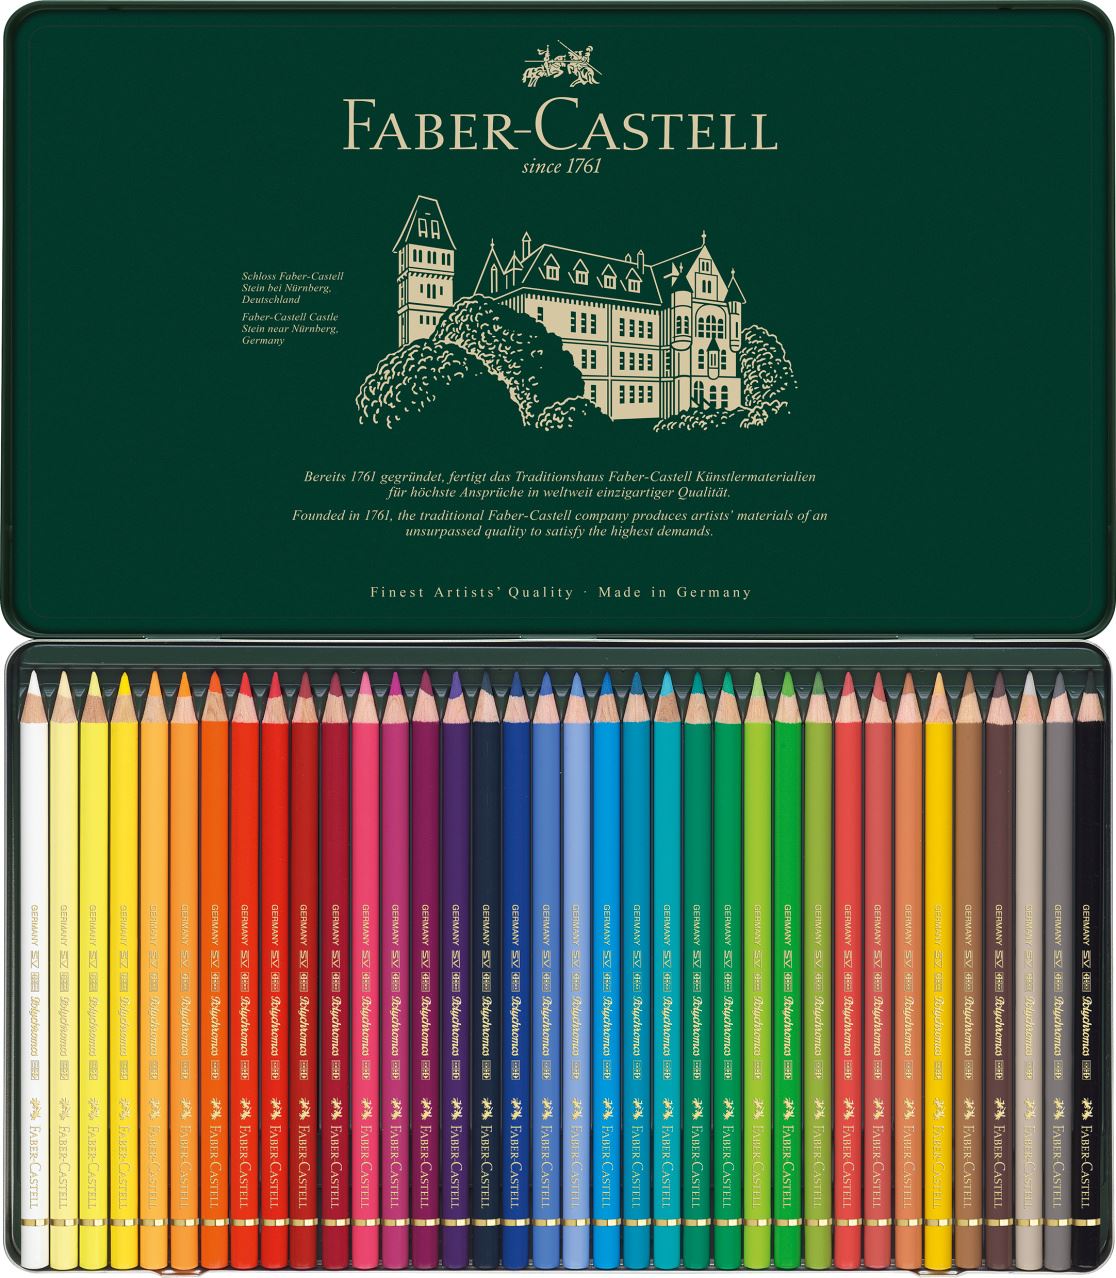 Faber-Castell - Estojo Metálico com 36 Lápis de Cor Permanentes Polychromos